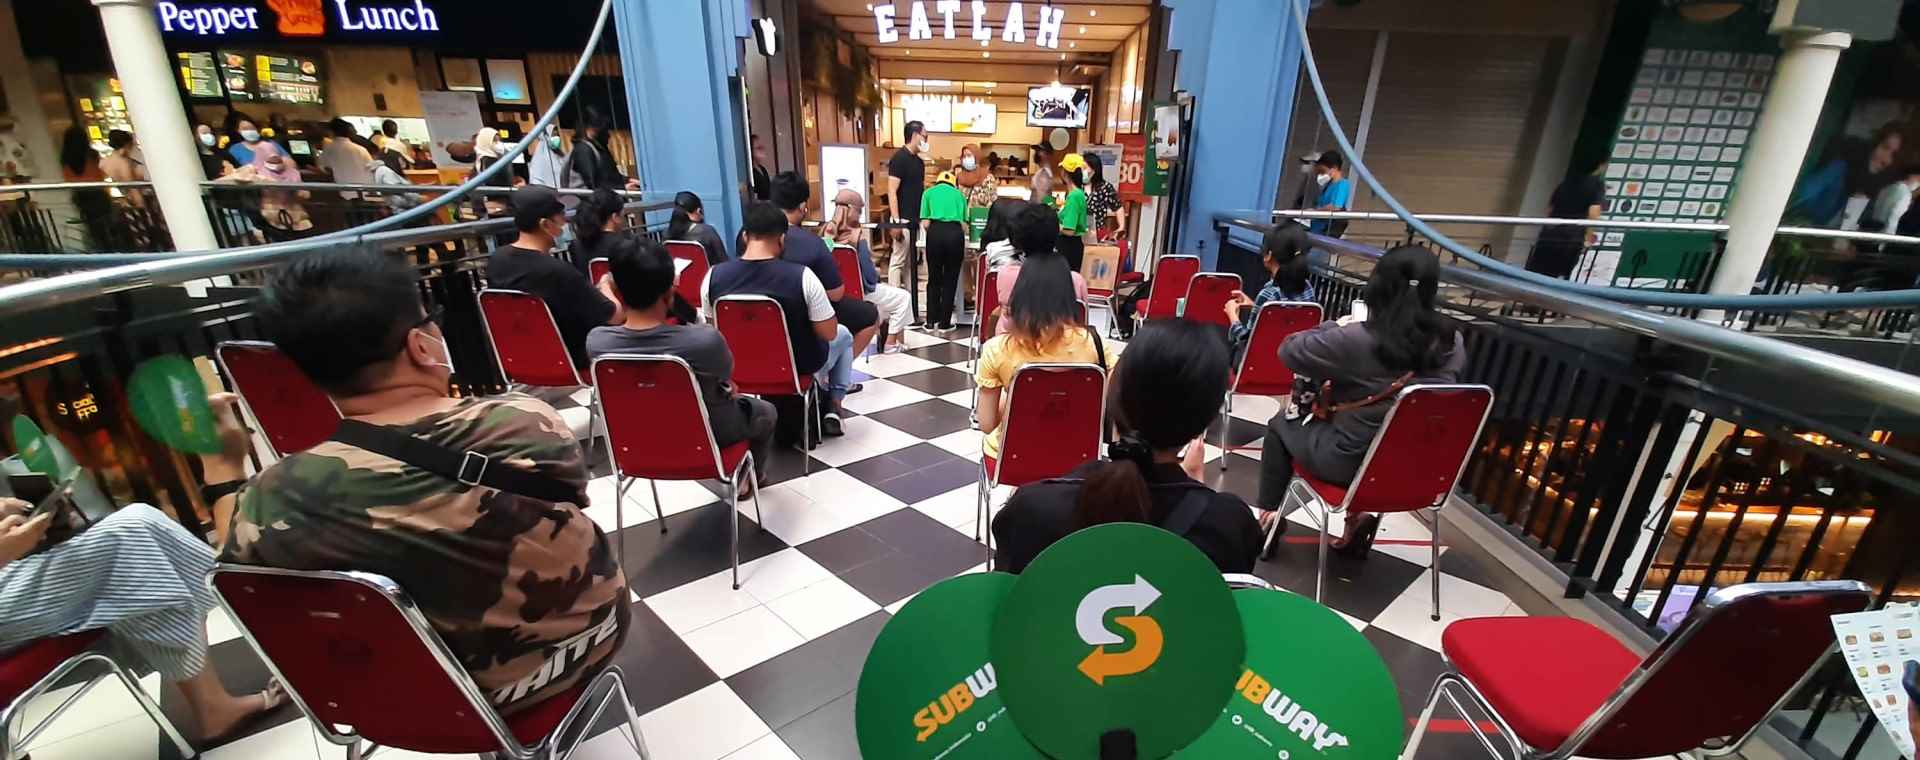 Calon pembeli antre saat pembukaan restoran Subway di Mal Cilandak Town Square, Jakarta, Jumat (15/10/2021)./Bisnis-Himawan L Nugraha